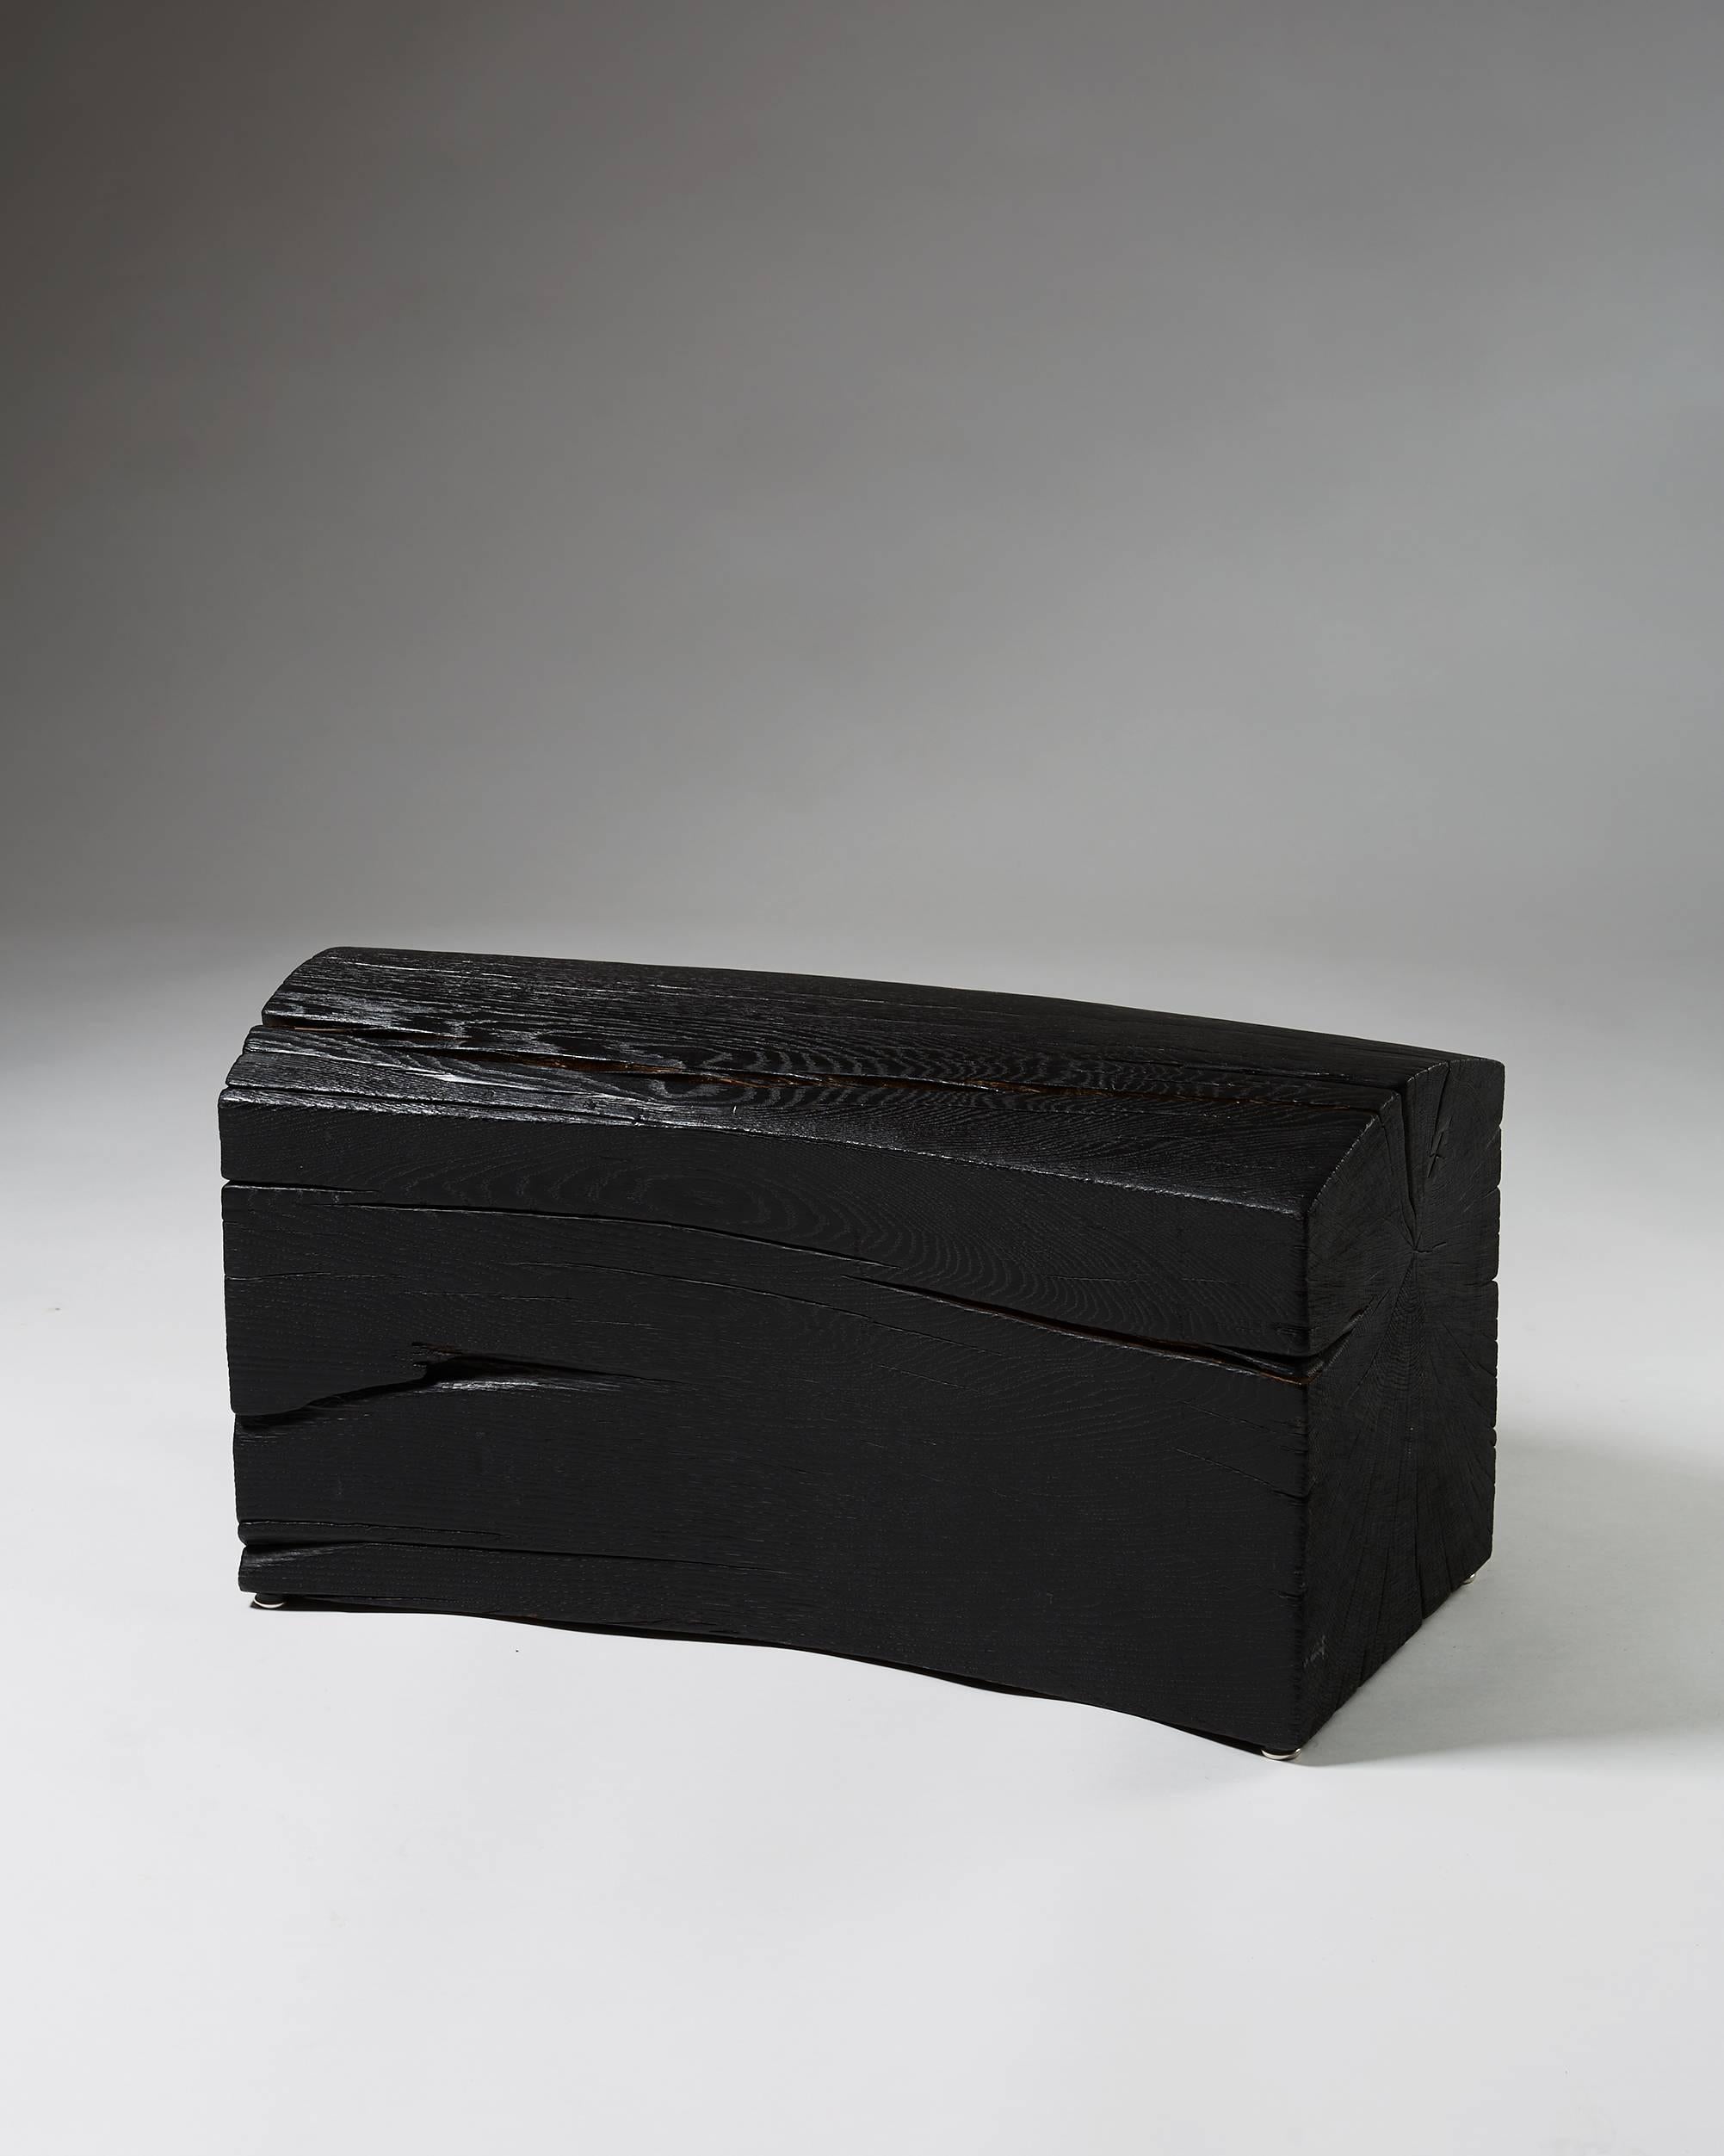 Unique bench ‘Arc’ designed by Per Brandstedt, 
Sweden, 2014. 
Solid blackened oak.

Measures: H: 40 cm/ 1' 4